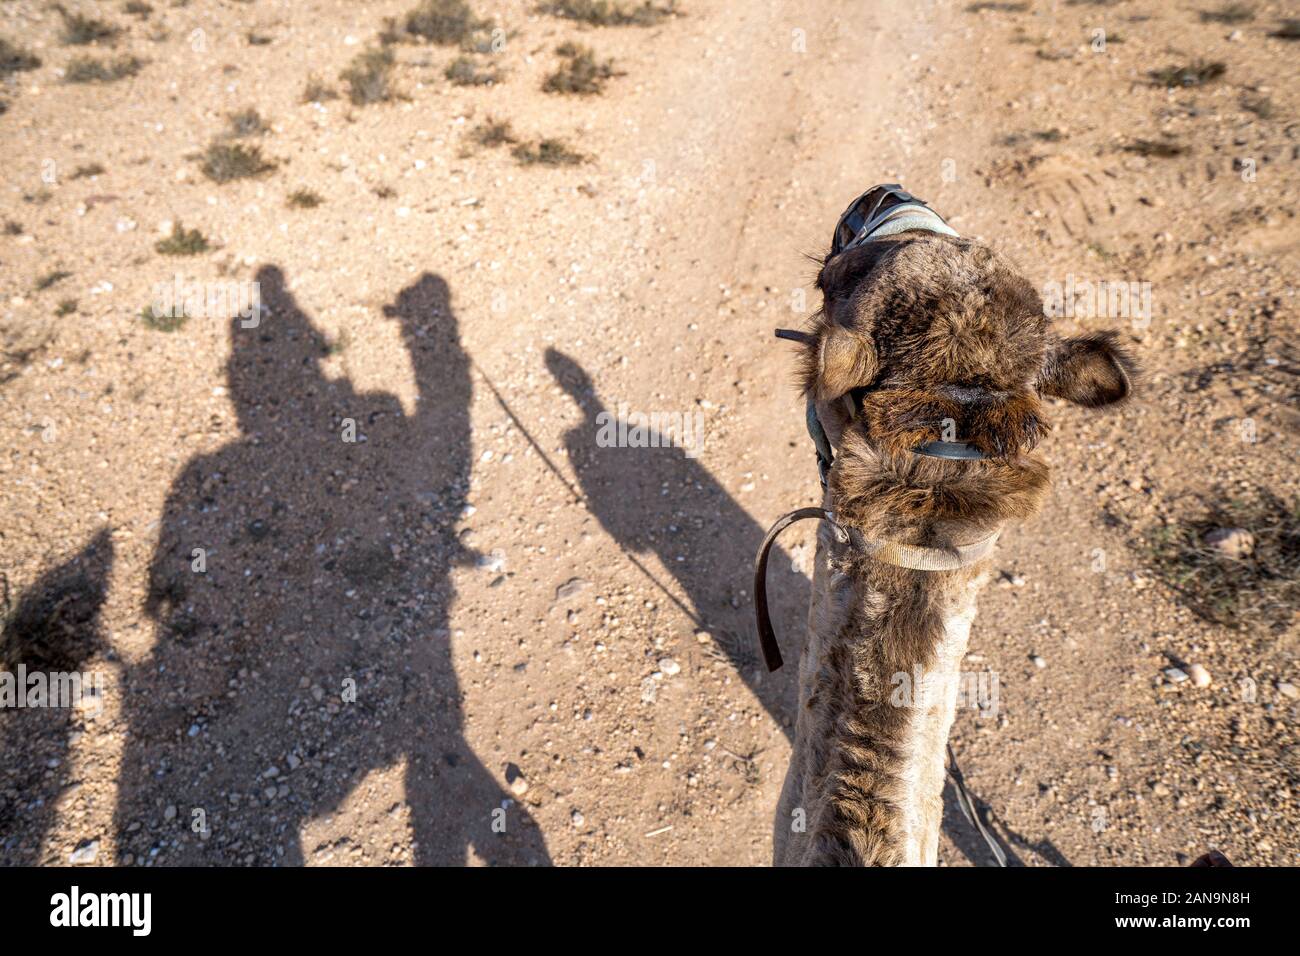 Shadows of dromedary camel caravan on the desert Agafay, Marrakech, Morocco Stock Photo